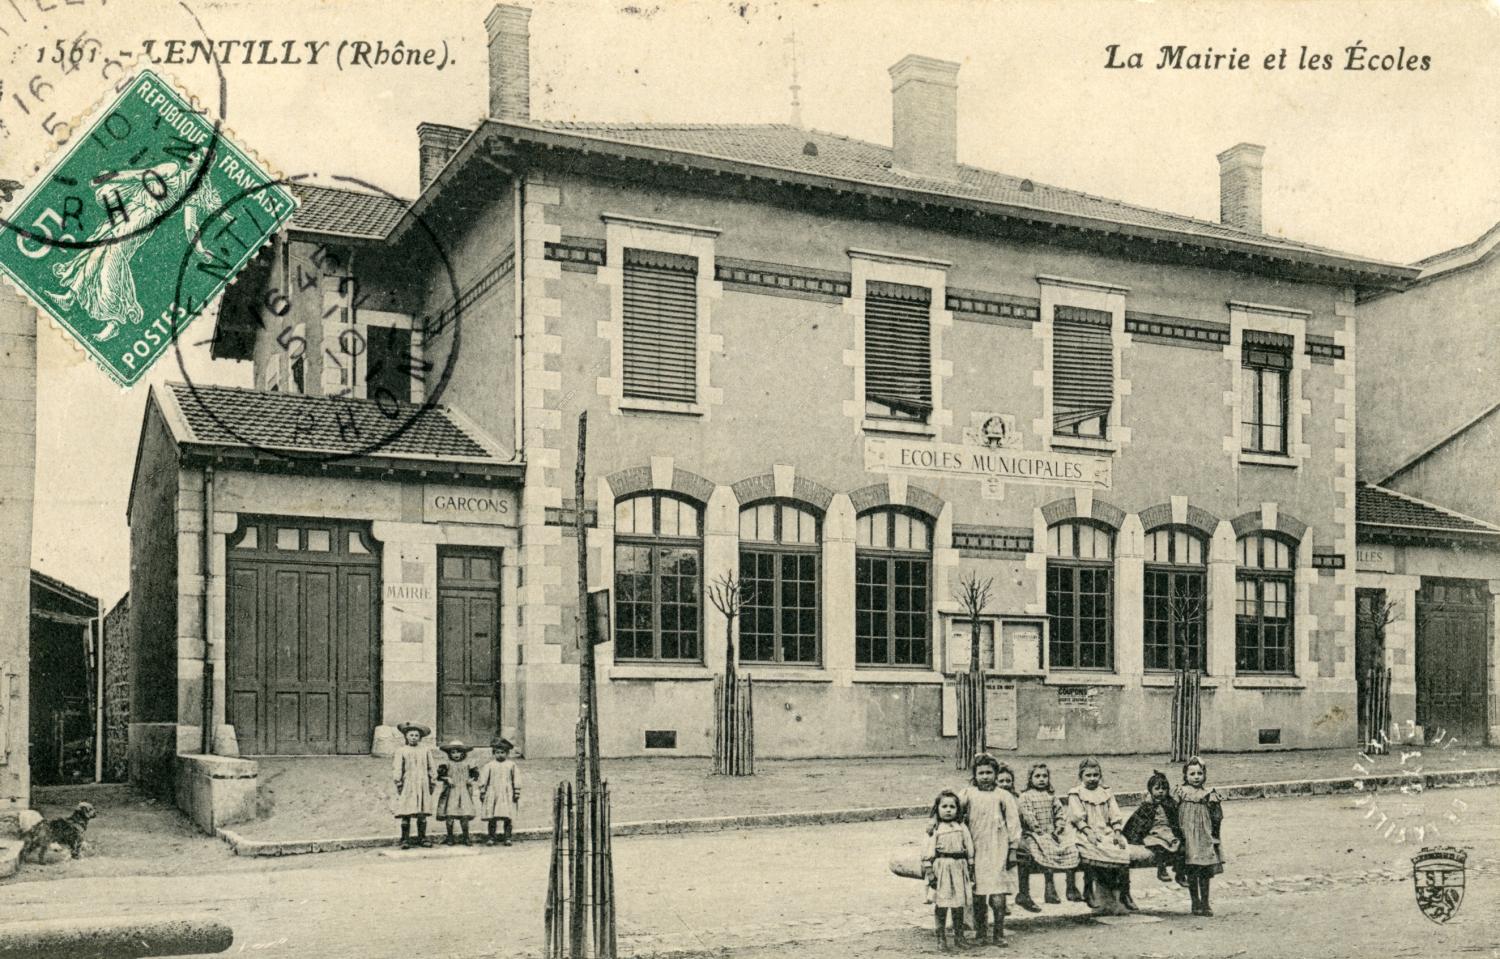 Lentilly (Rhône). - La Mairie et les Ecoles